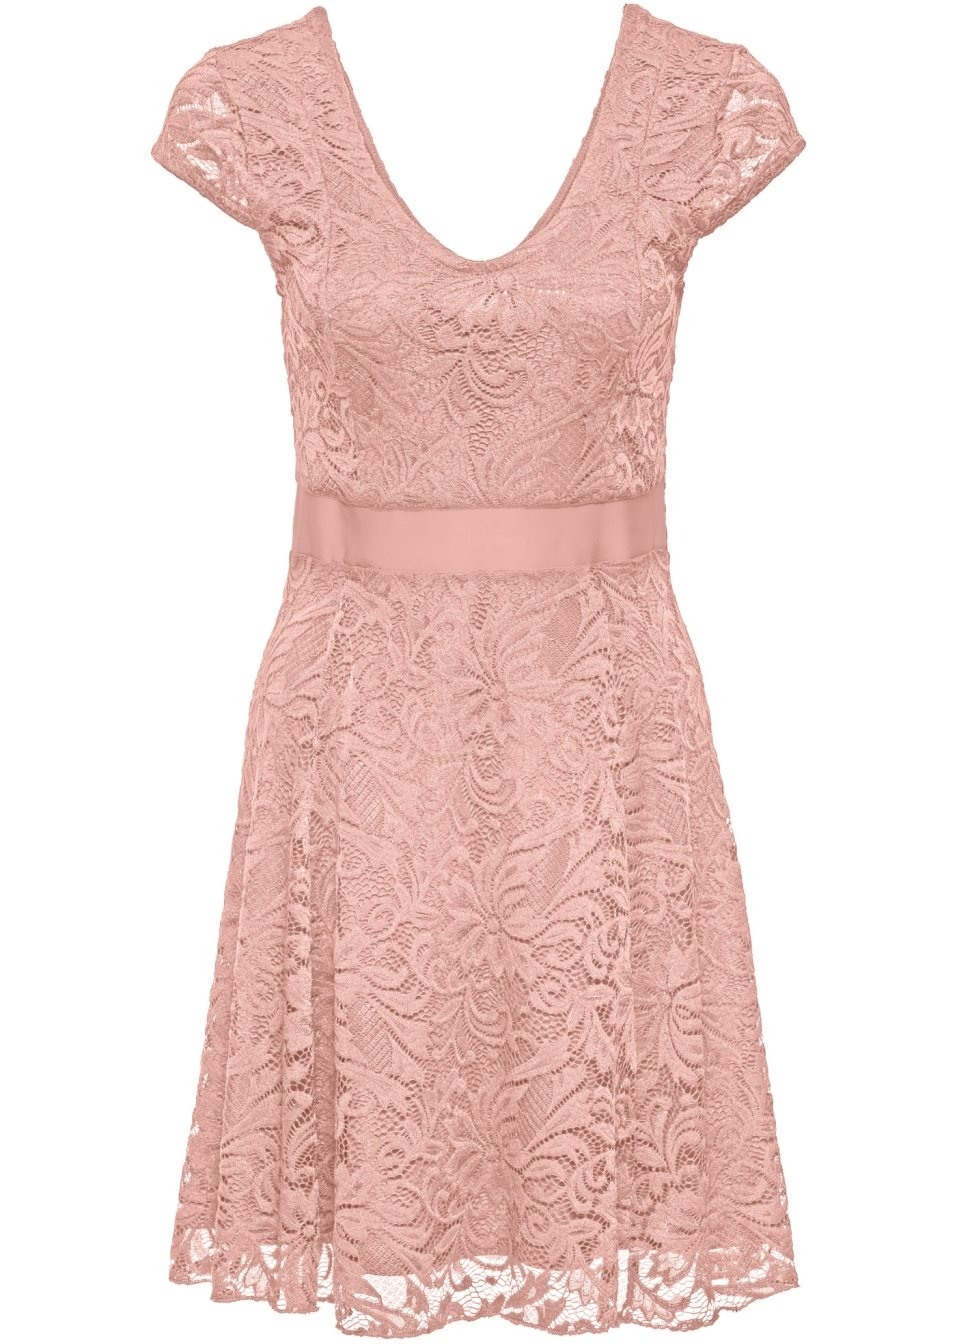 Formal Coolste Kleid Kurz Rosa Vertrieb13 Ausgezeichnet Kleid Kurz Rosa Stylish